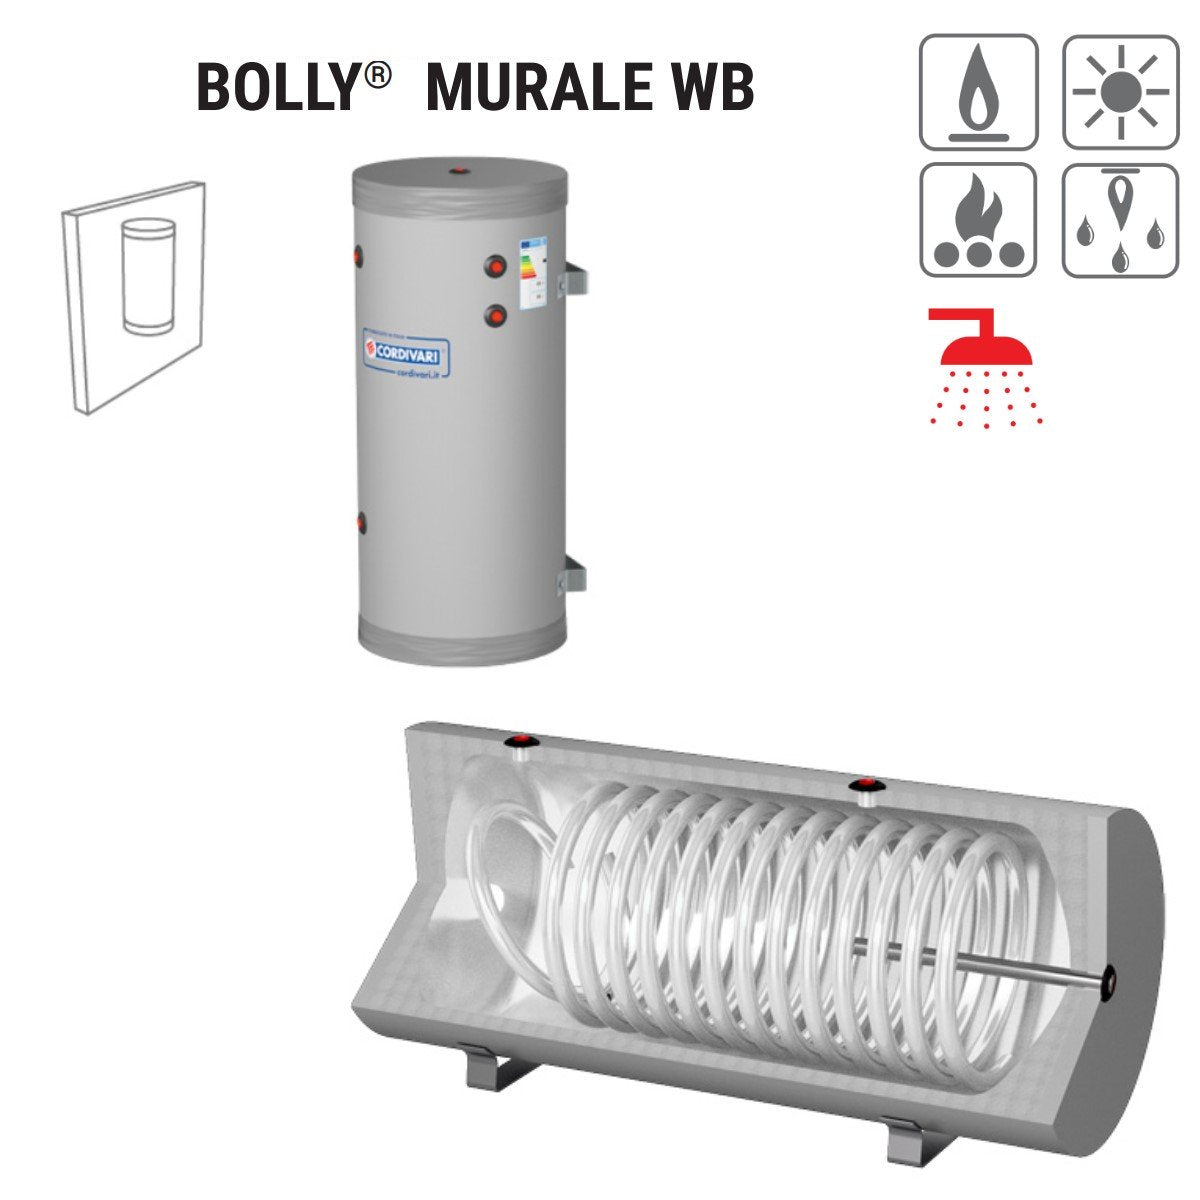 immagine-2-cordivari-bollitore-polywarm-cordivari-modello-bolly-murale-wb-200-per-produzione-di-a-c-s-con-1-scambiatore-fisso